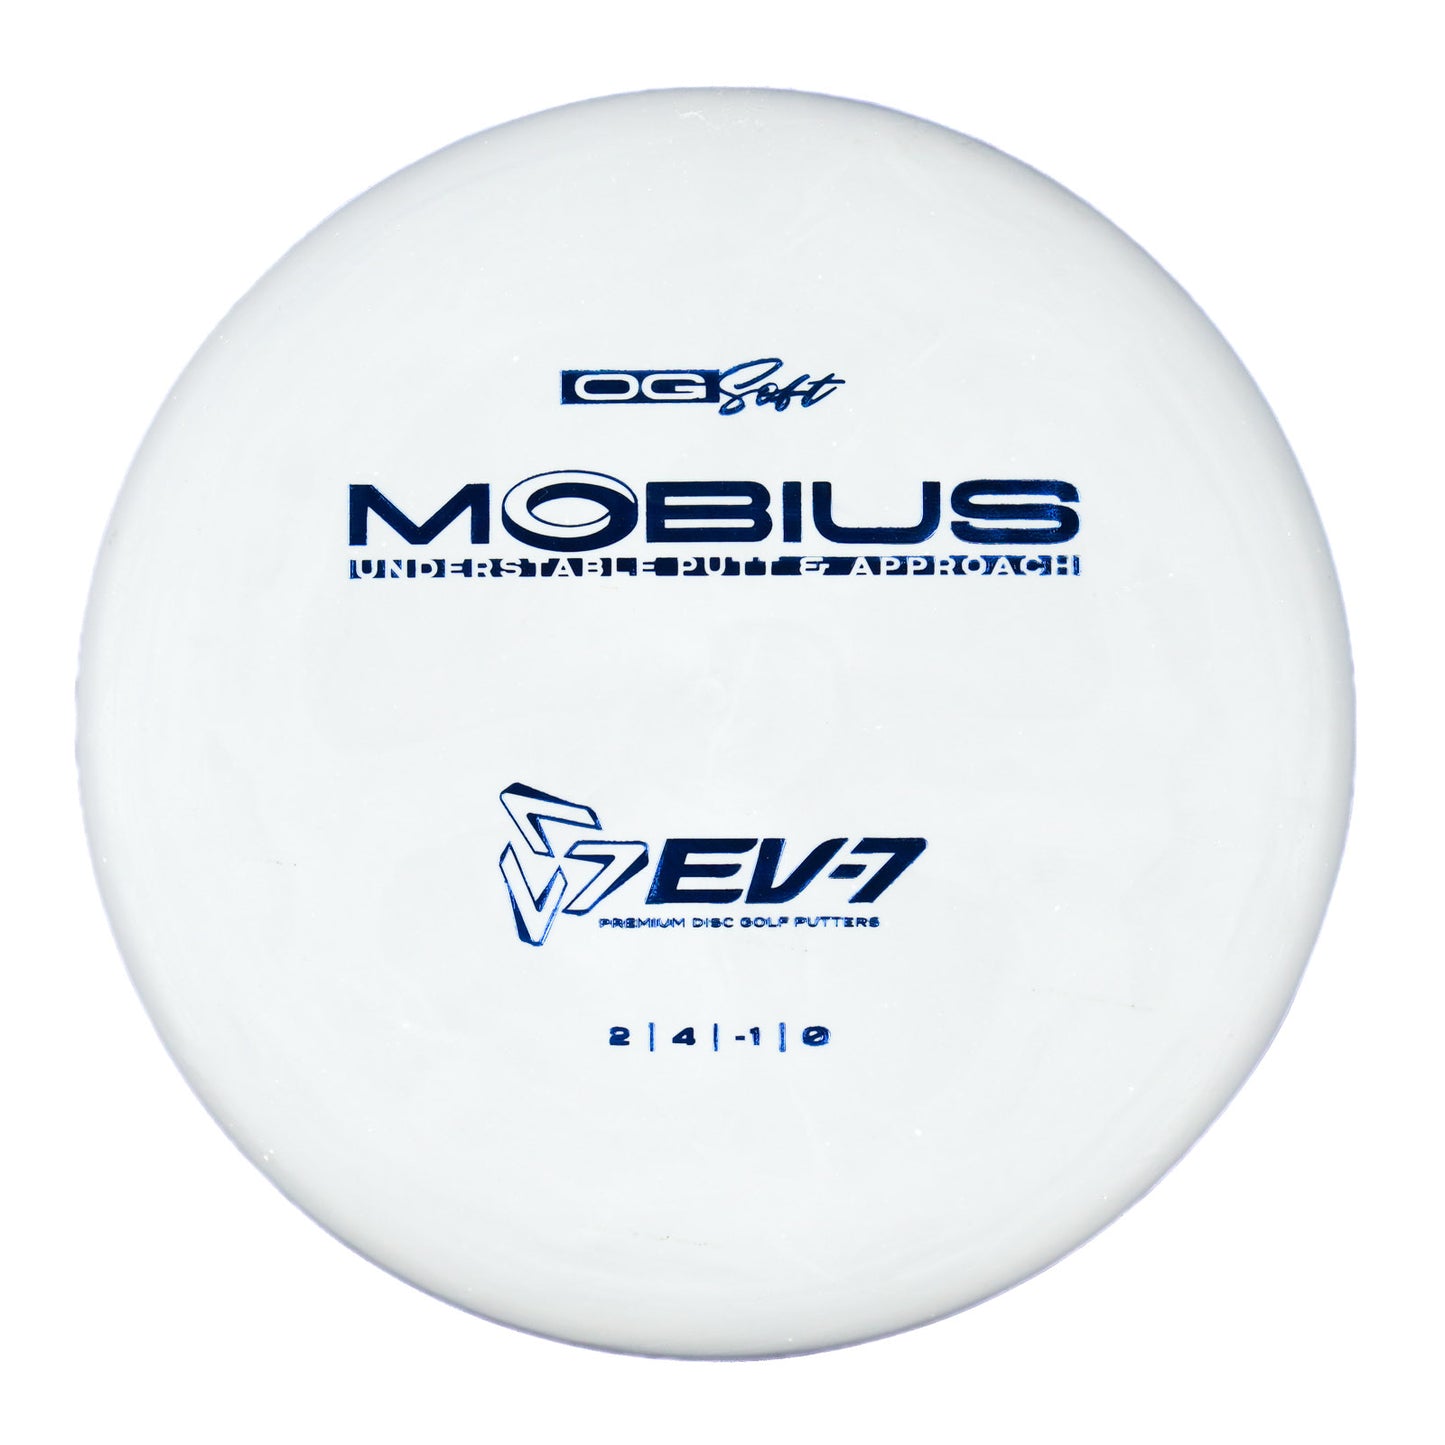 EV-7 Möbius - OG Soft 176g | Style 0002